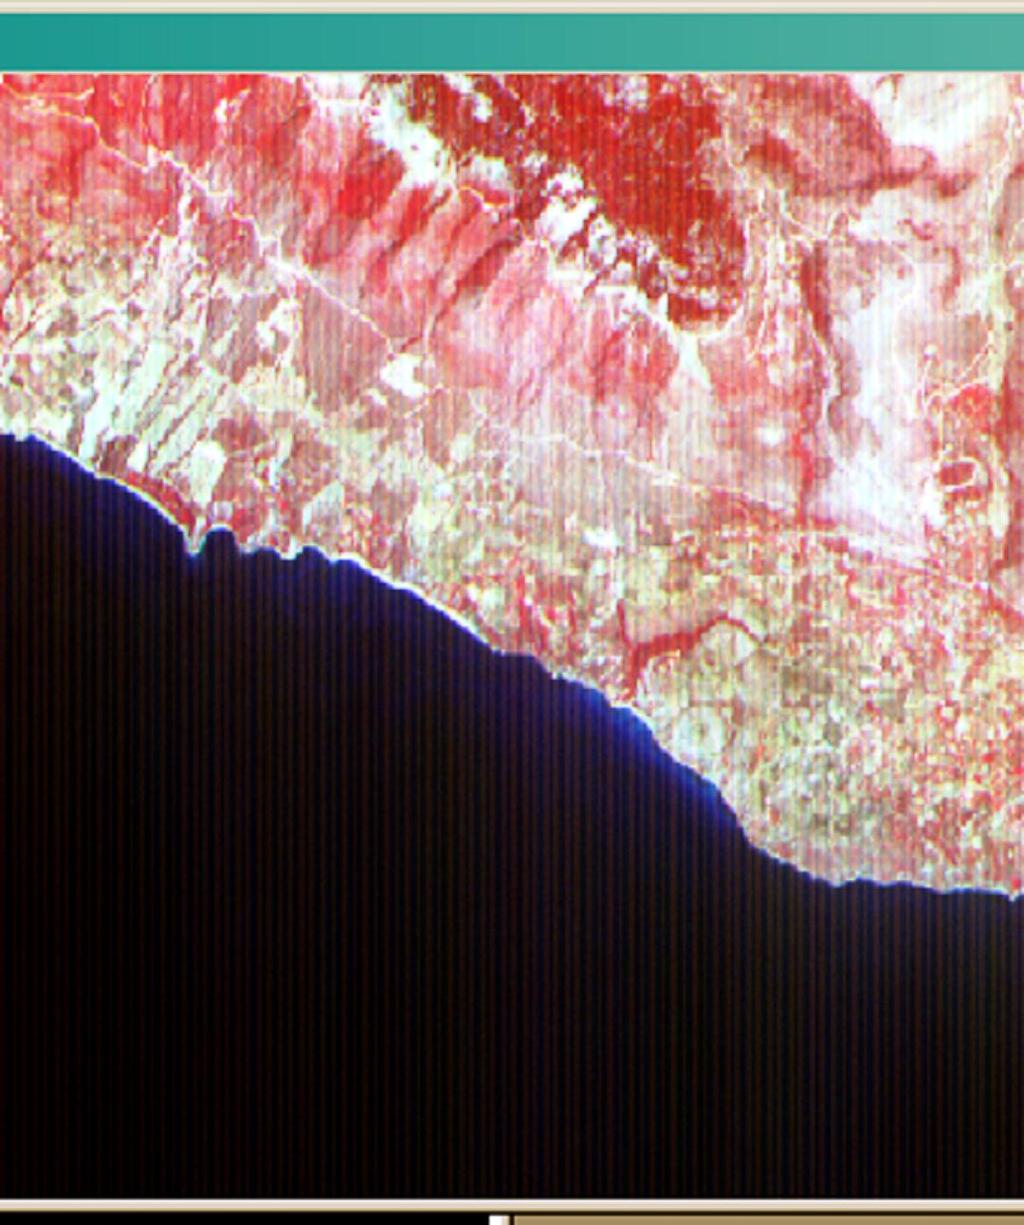 49 Στην δορυφορική εικόνα ASTER στο κανάλι 08 του ASTER (τρίτο κανάλι του SWIR), η ζωνοποίηση έγινε ορατή (ενισχύθηκε) με την επιλογή κατάλληλου look-up-table (αντιστοιχία χρωμάτων)